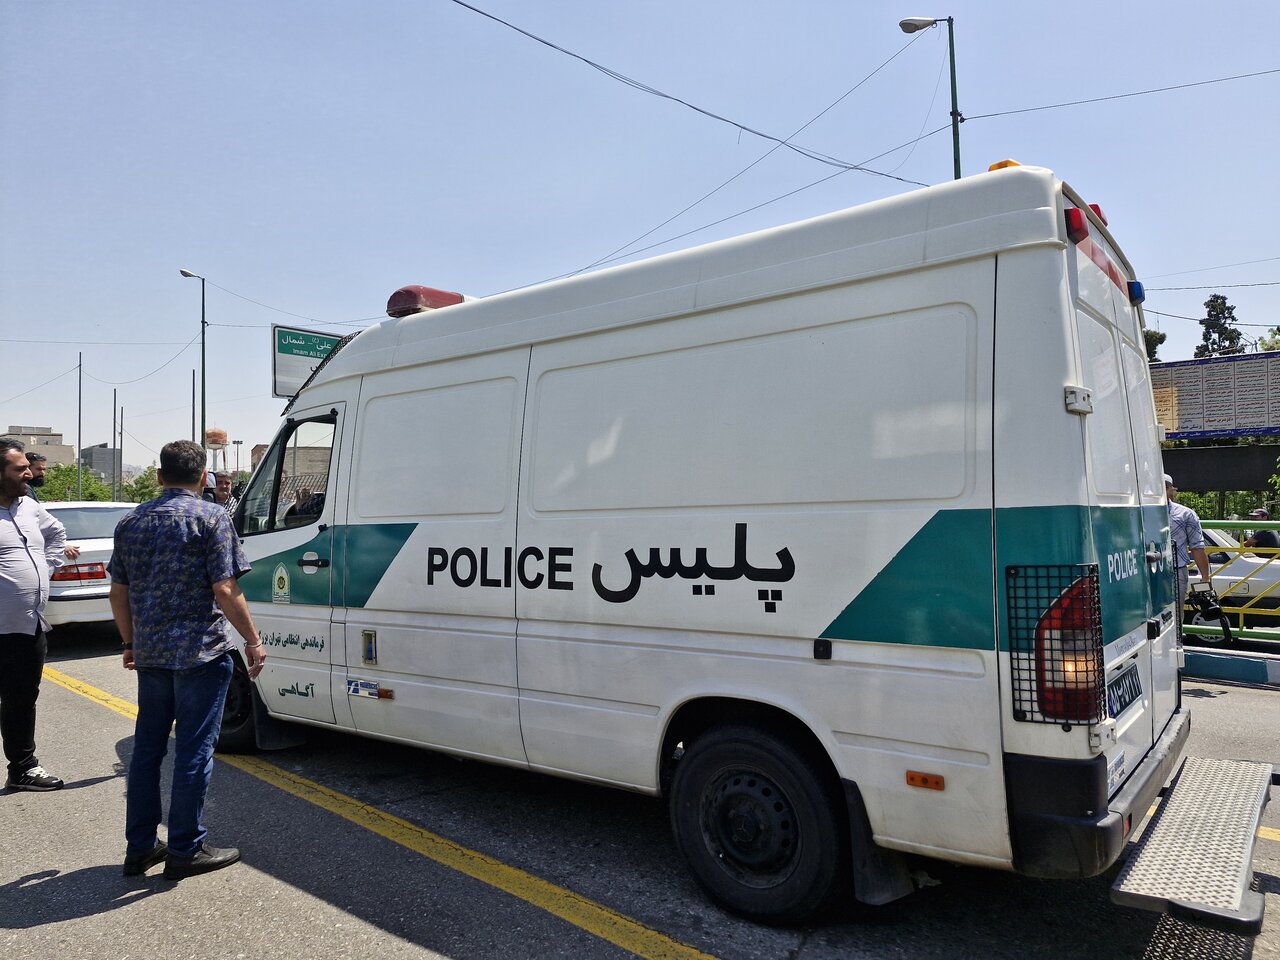 دستگیری عامل ضرب و شتم در اتوبوس/مجازات سنگین در انتظار این افراد